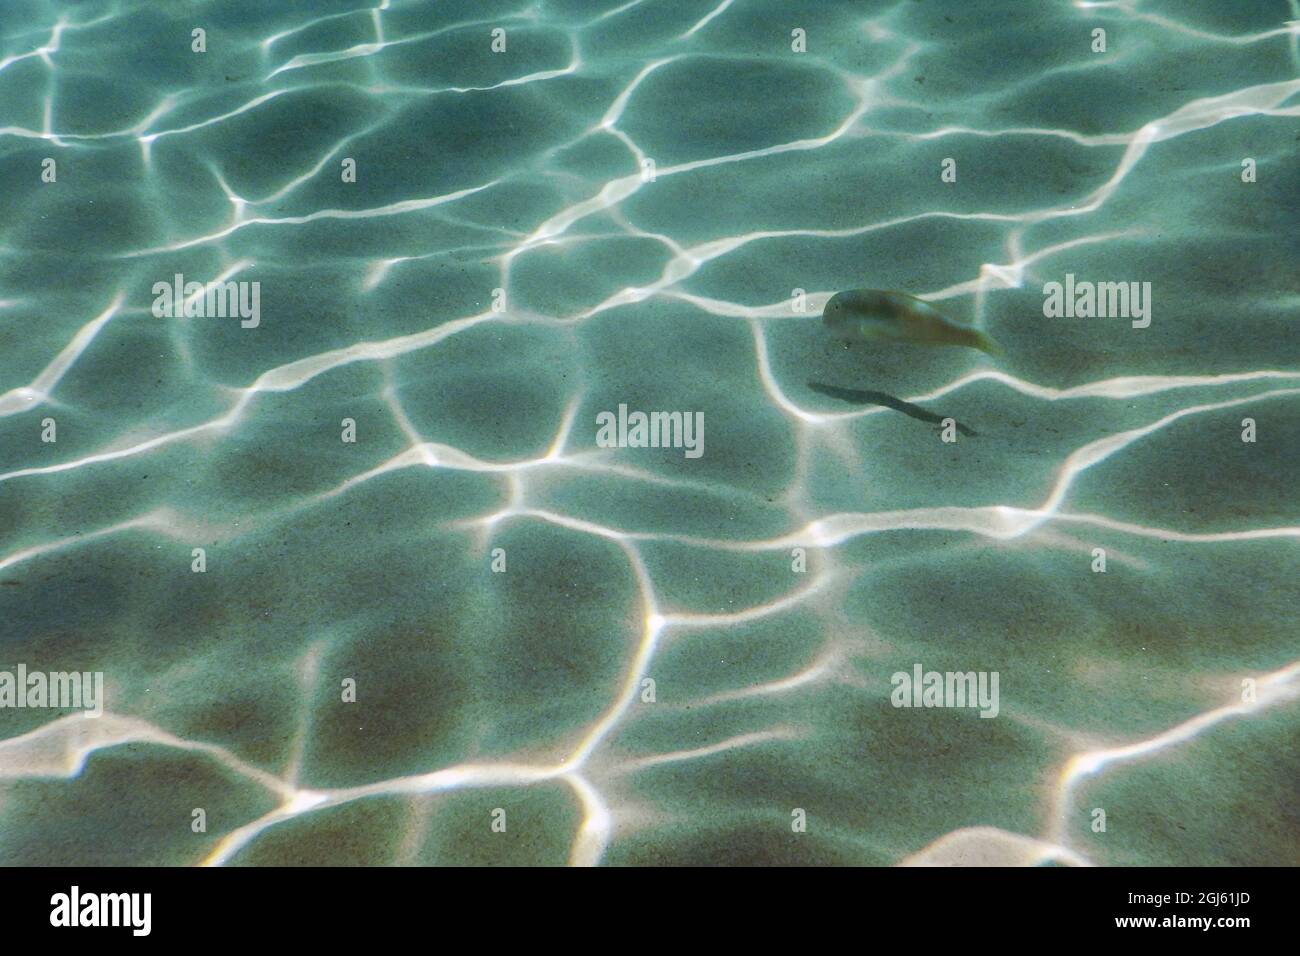 Sandy bottom, fish swimming underwater Stock Photo